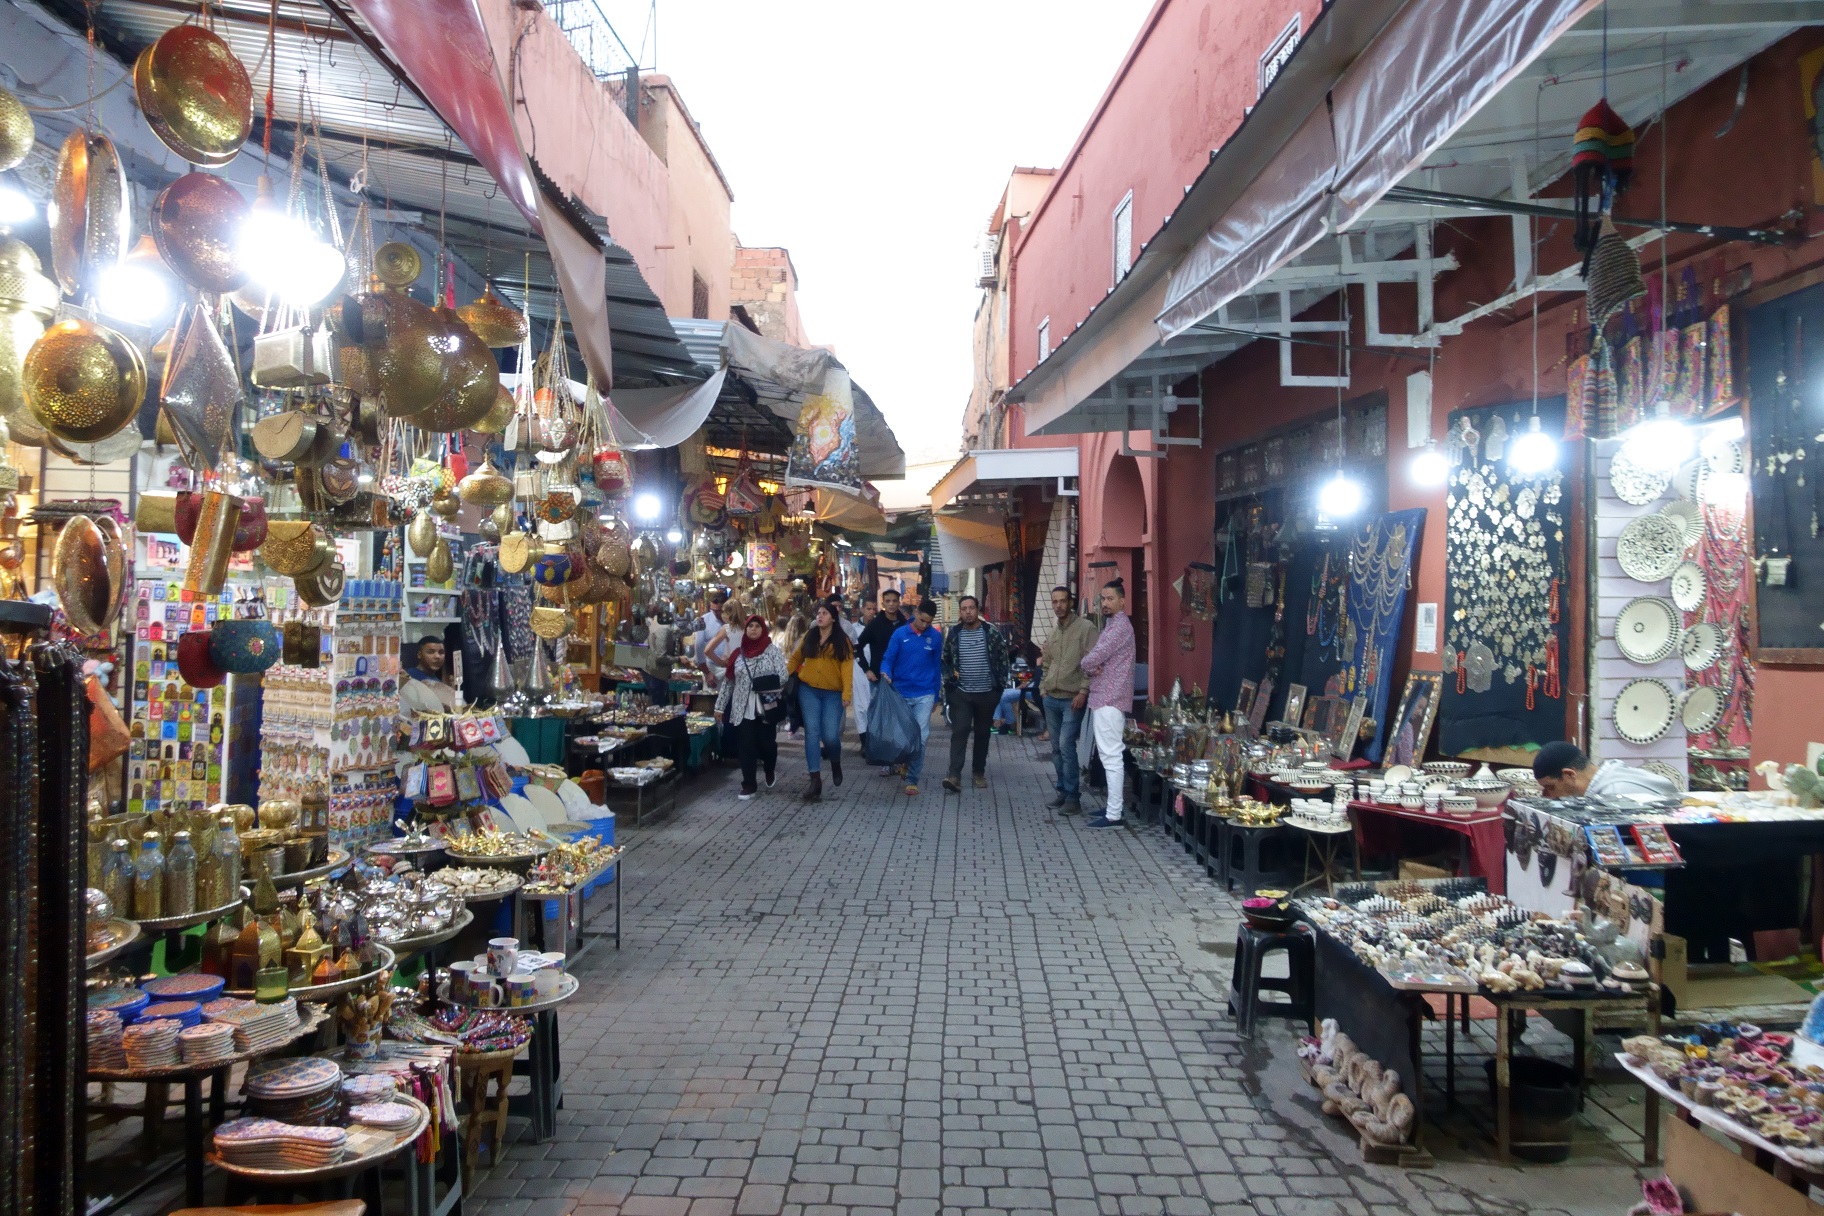 Die Medina ist sehr Touristisch und es werden viele Waren aus Fernost angeboten. Ein Besuch lohnt sich trotzdem.